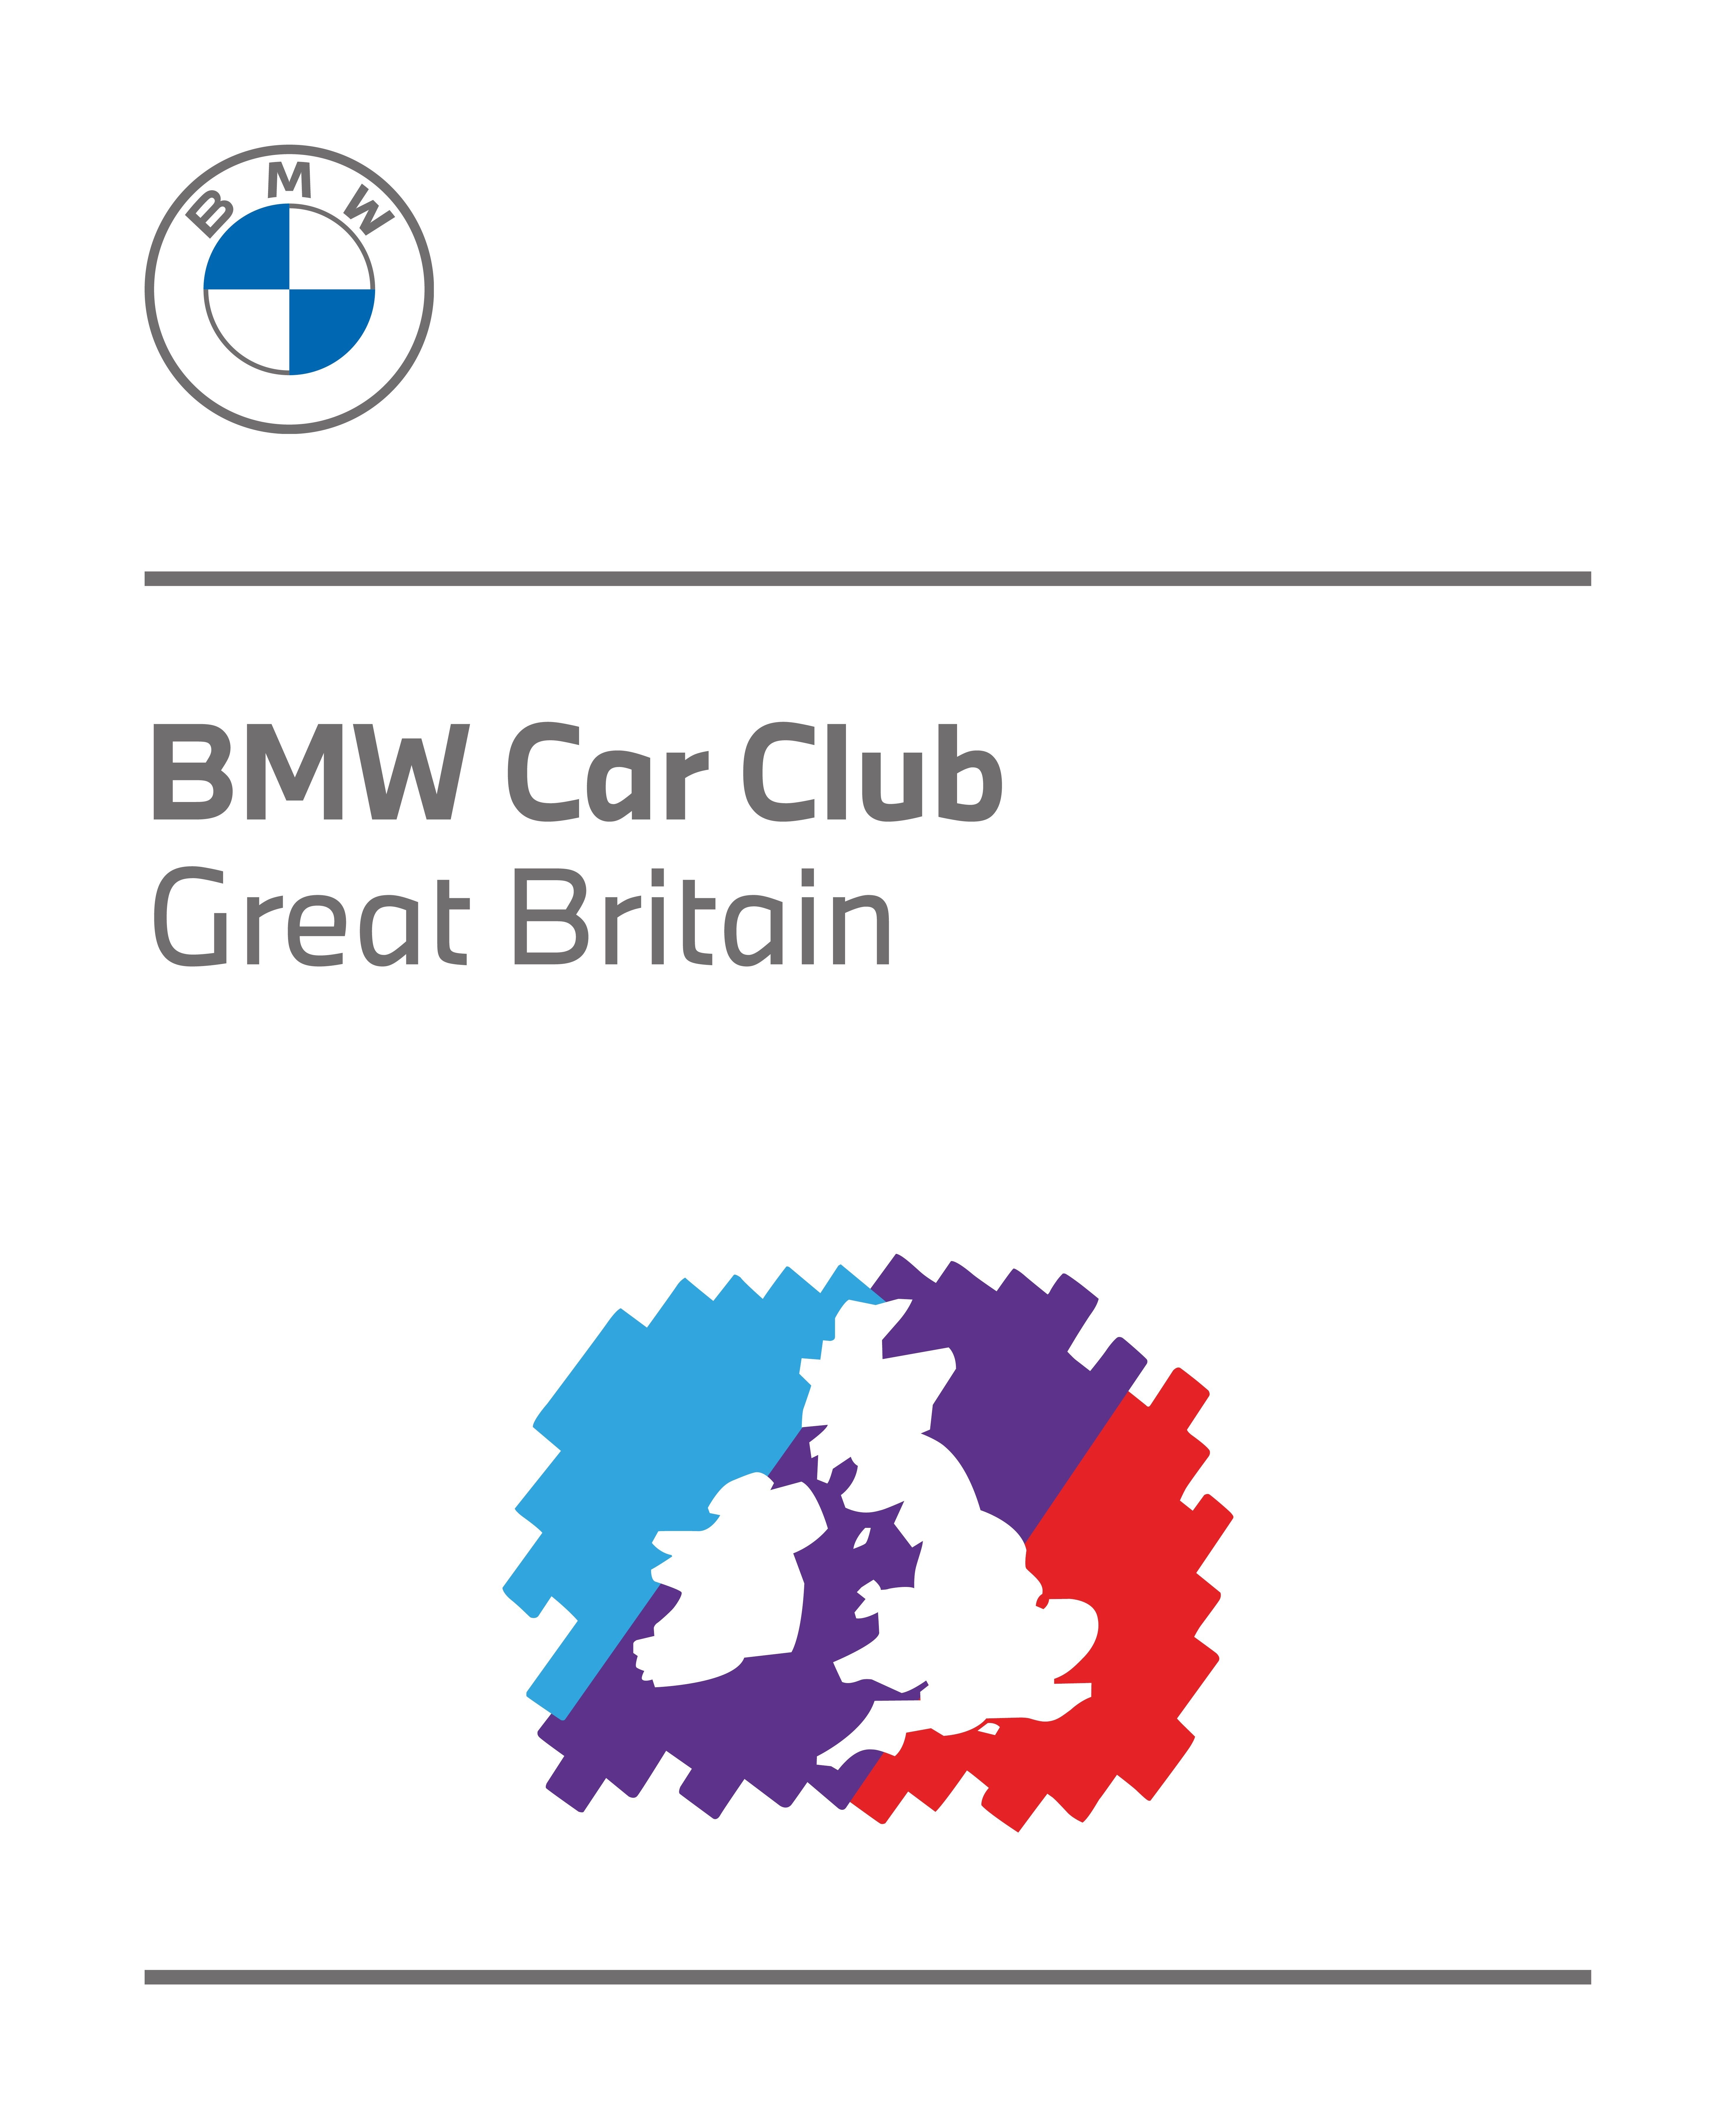 The BMW Car Club GB